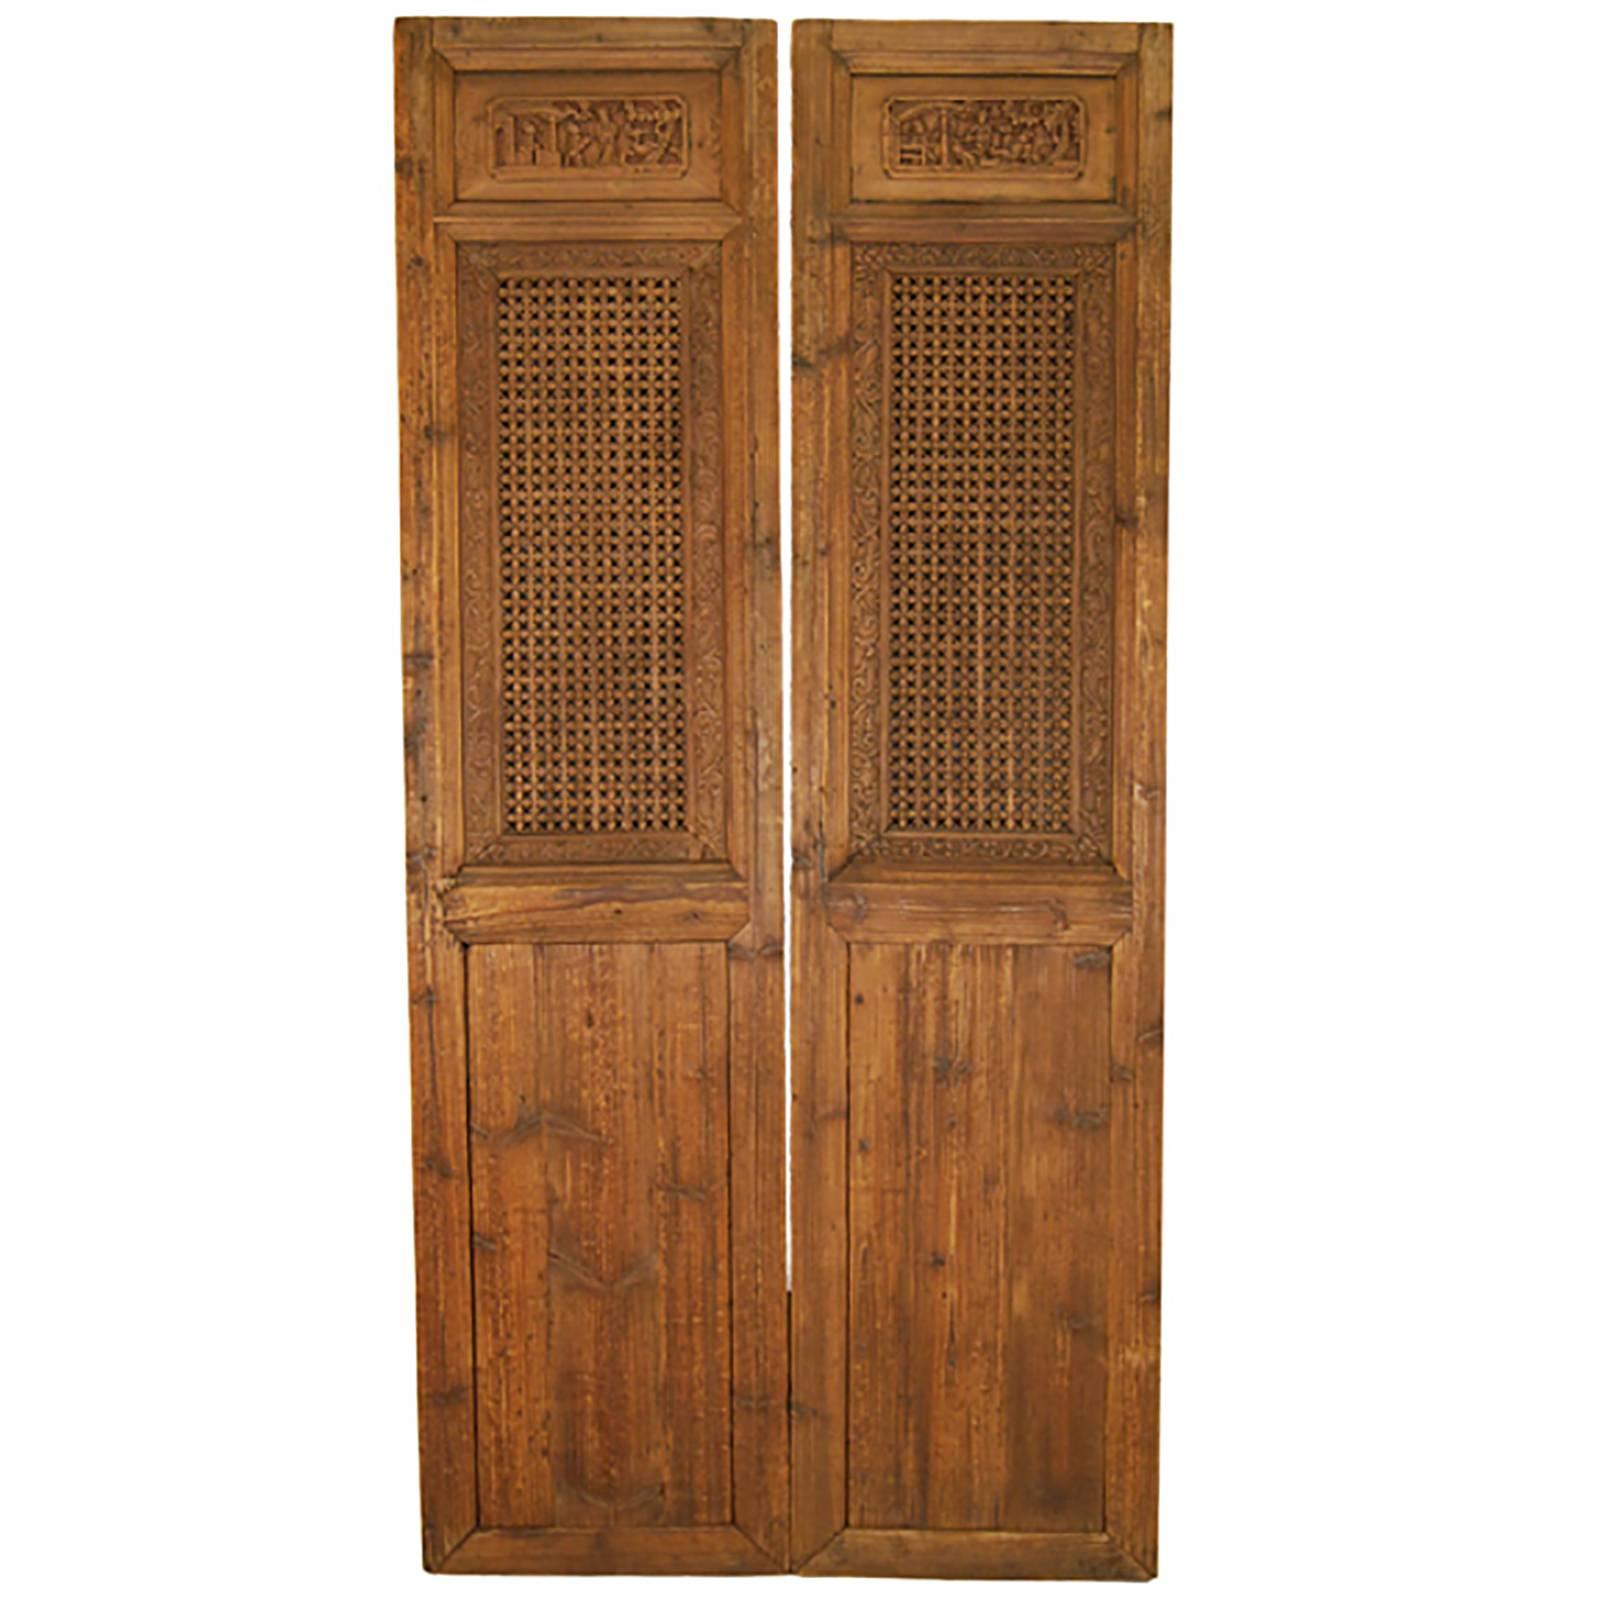 Pair of Chinese Lattice Paneled Doors